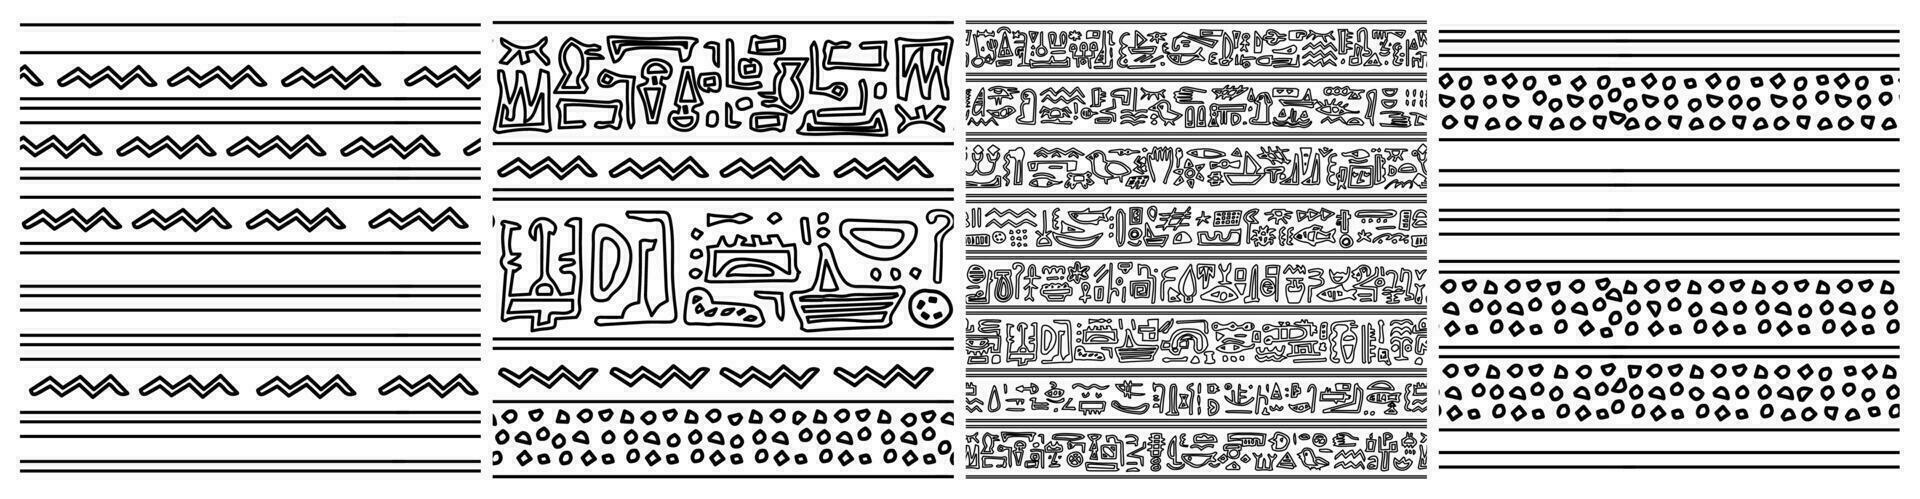 Egipto tema conjunto de sin costura patrones. negro blanco vector mano dibujado grupo de huellas dactilares con símbolos me gusta jeroglíficos